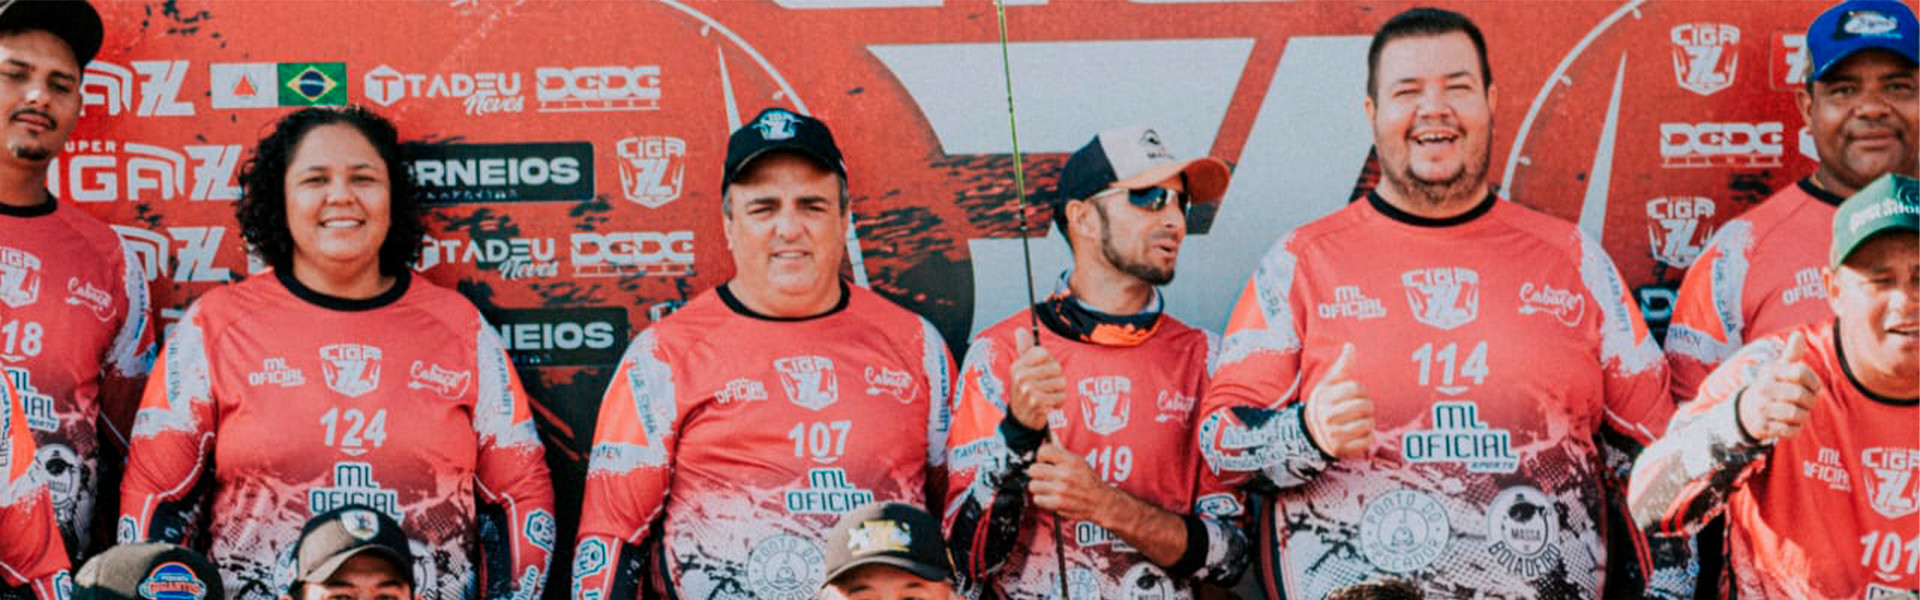 Torneios do final de semana em Minas Gerais: sábado e domingo de muita pesca esportiva mineira